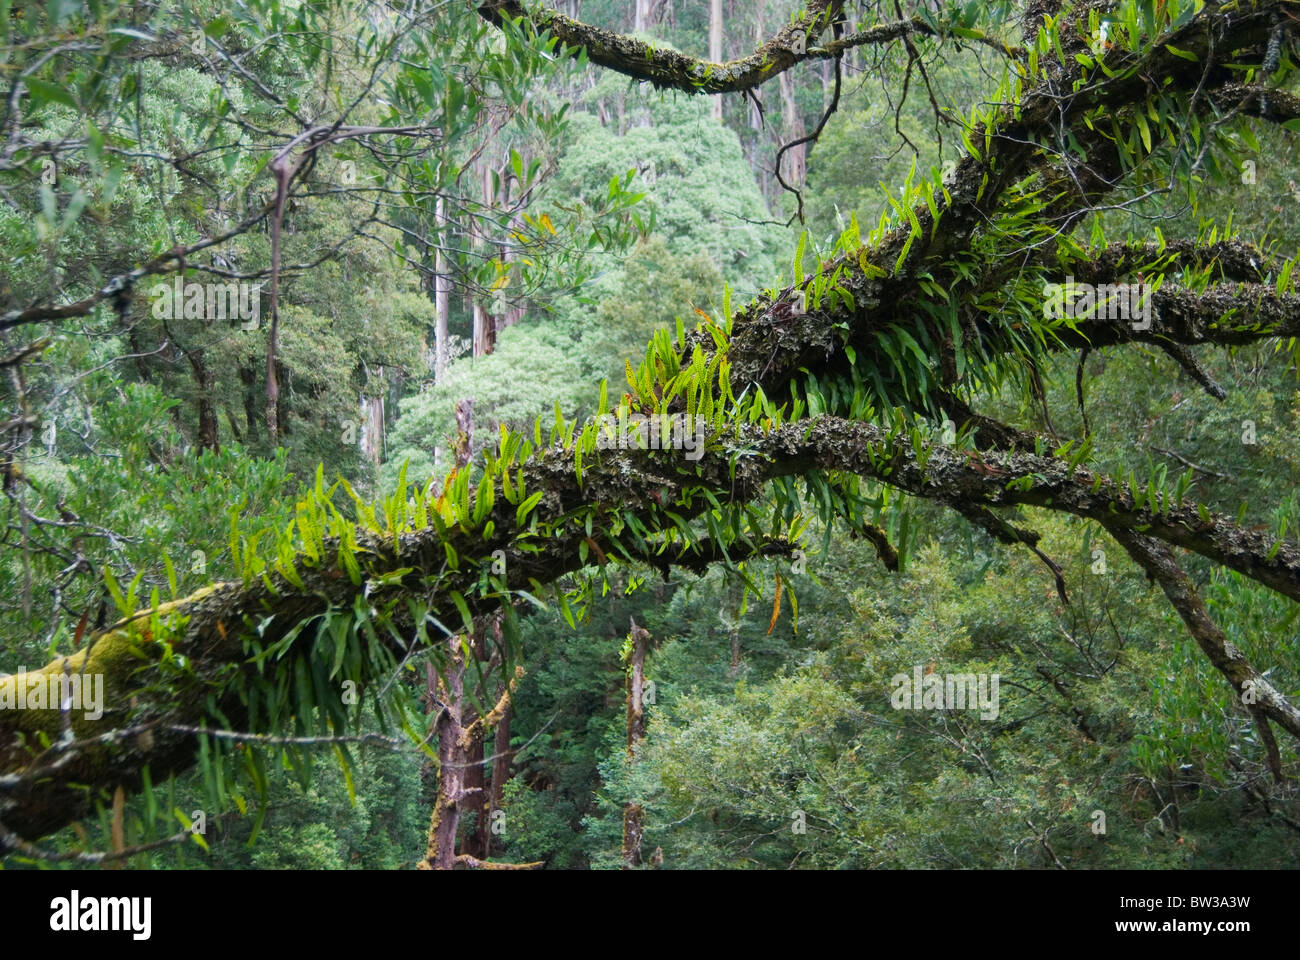 Kangaroo fern (Microsorum pustulatum) on rainforest tree in Great Otway National Park, Victoria, Australia Stock Photo